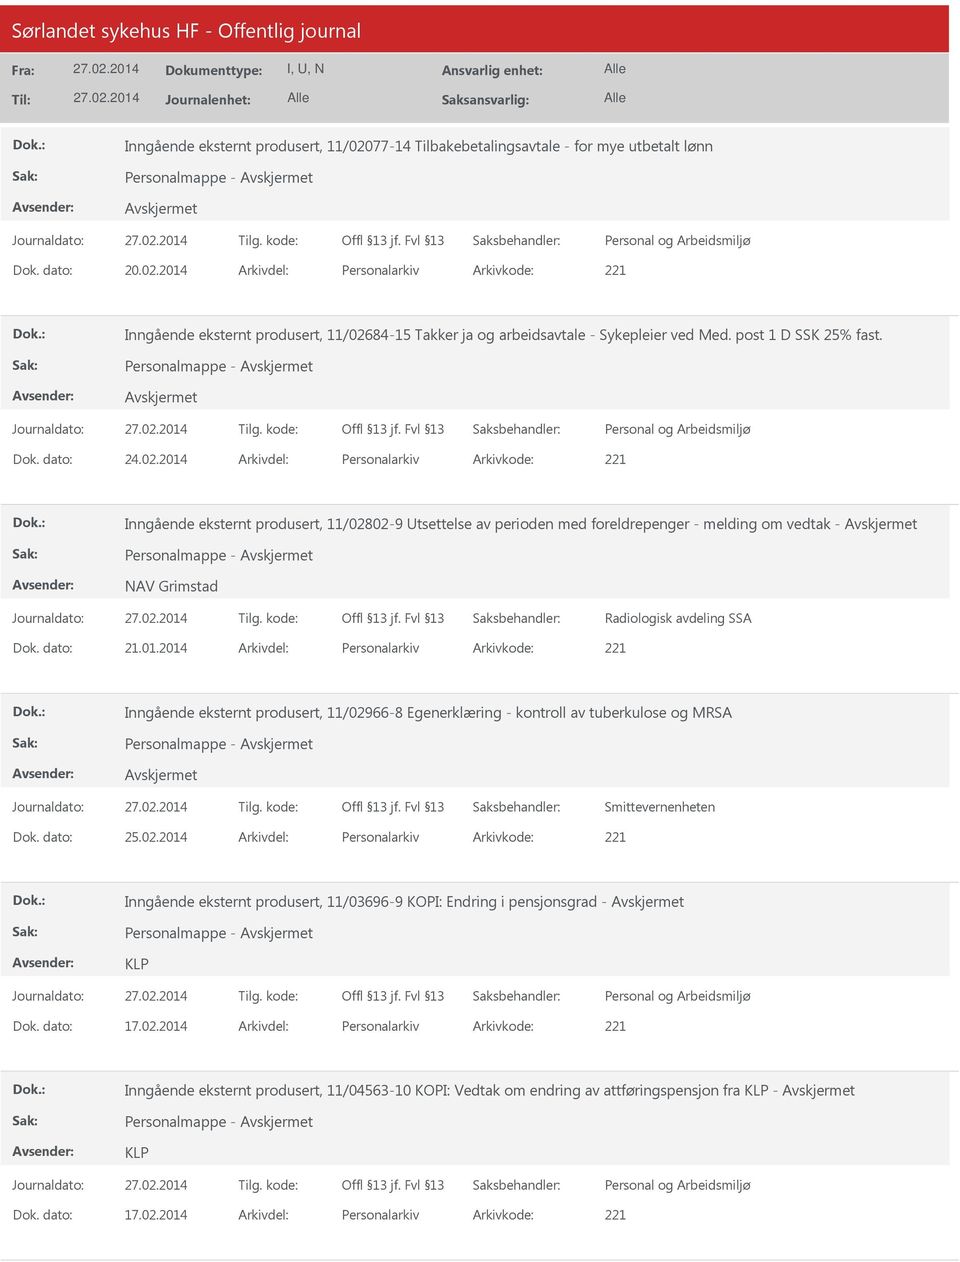 2014 Arkivdel: Personalarkiv Arkivkode: 221 Inngående eksternt produsert, 11/02802-9 Utsettelse av perioden med foreldrepenger - melding om vedtak - NAV Grimstad Radiologisk avdeling SSA Dok.